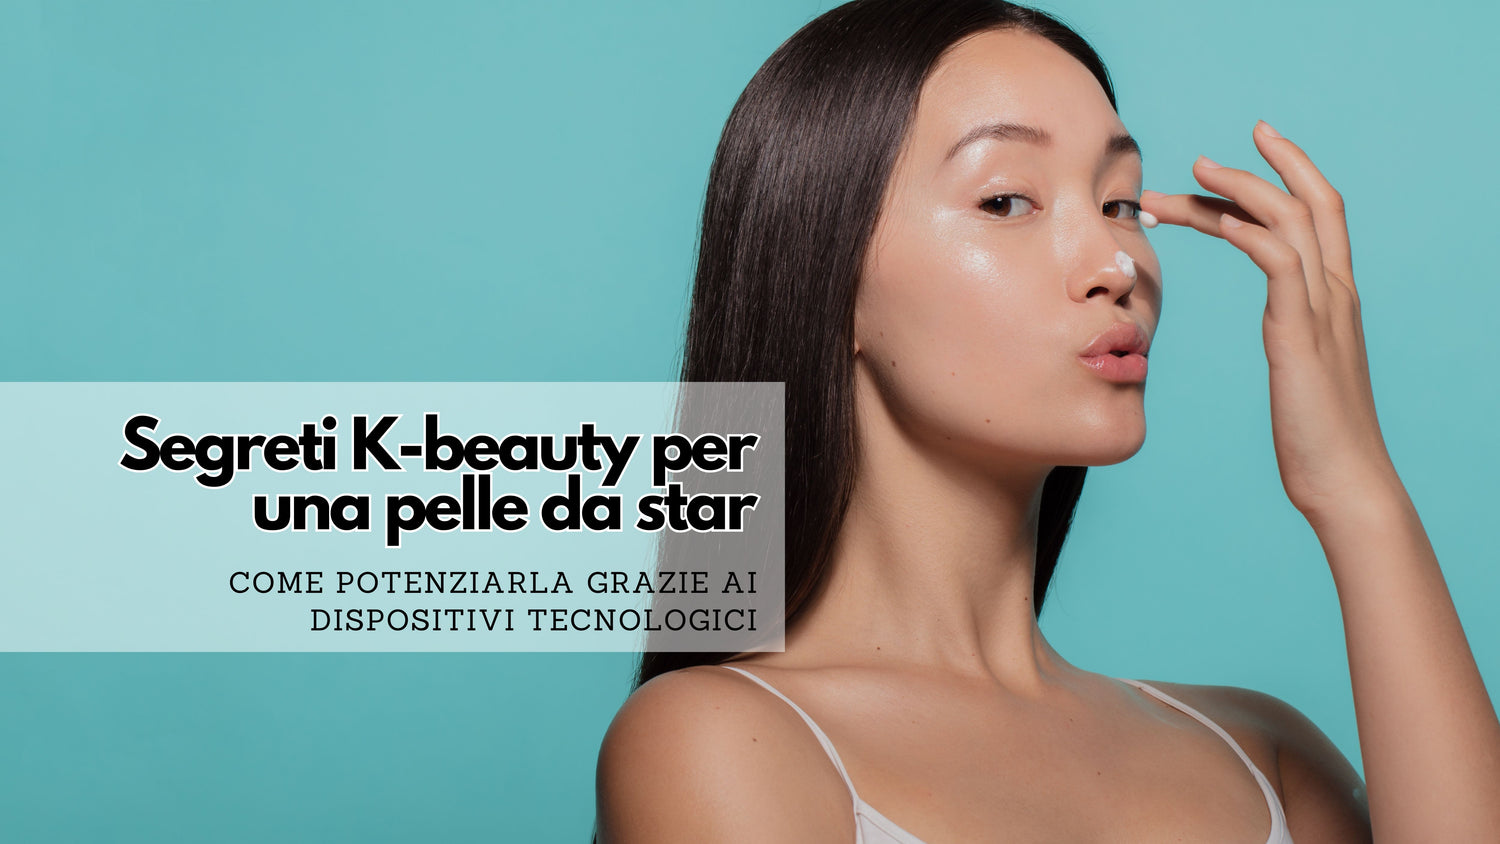 Segreti K-beauty per una pelle da star: Come potenziarla grazie ai dispositivi tecnologici innovativi